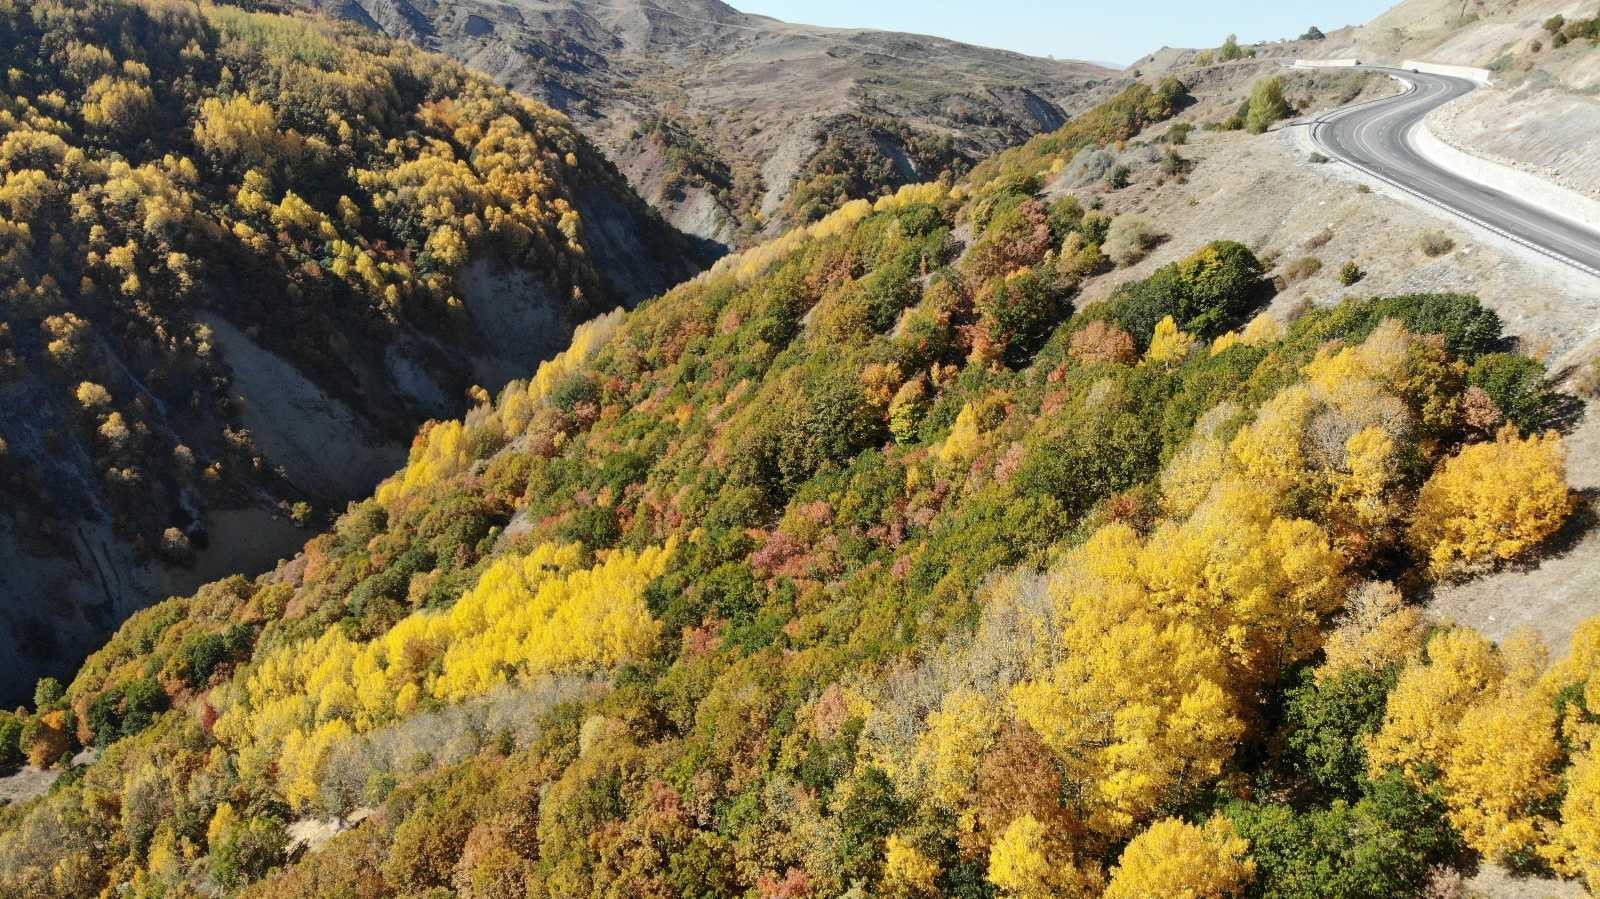 Sonbahar ile renk cümbüşü yaşanıyor #erzincan